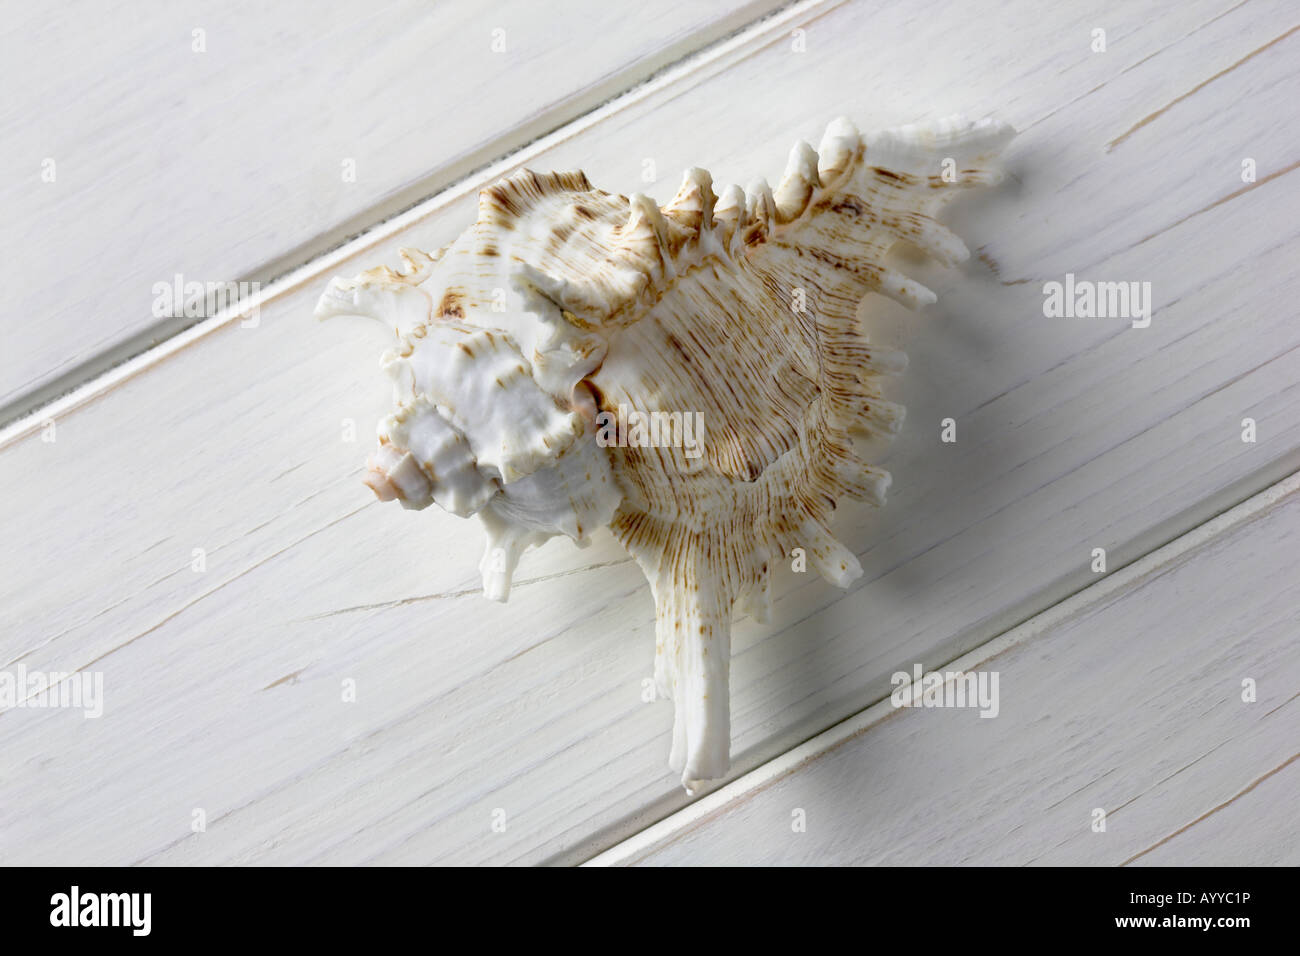 Spider-Muschel auf einem weiß lackierten Holz Nut und Feder-Hintergrund Stockfoto